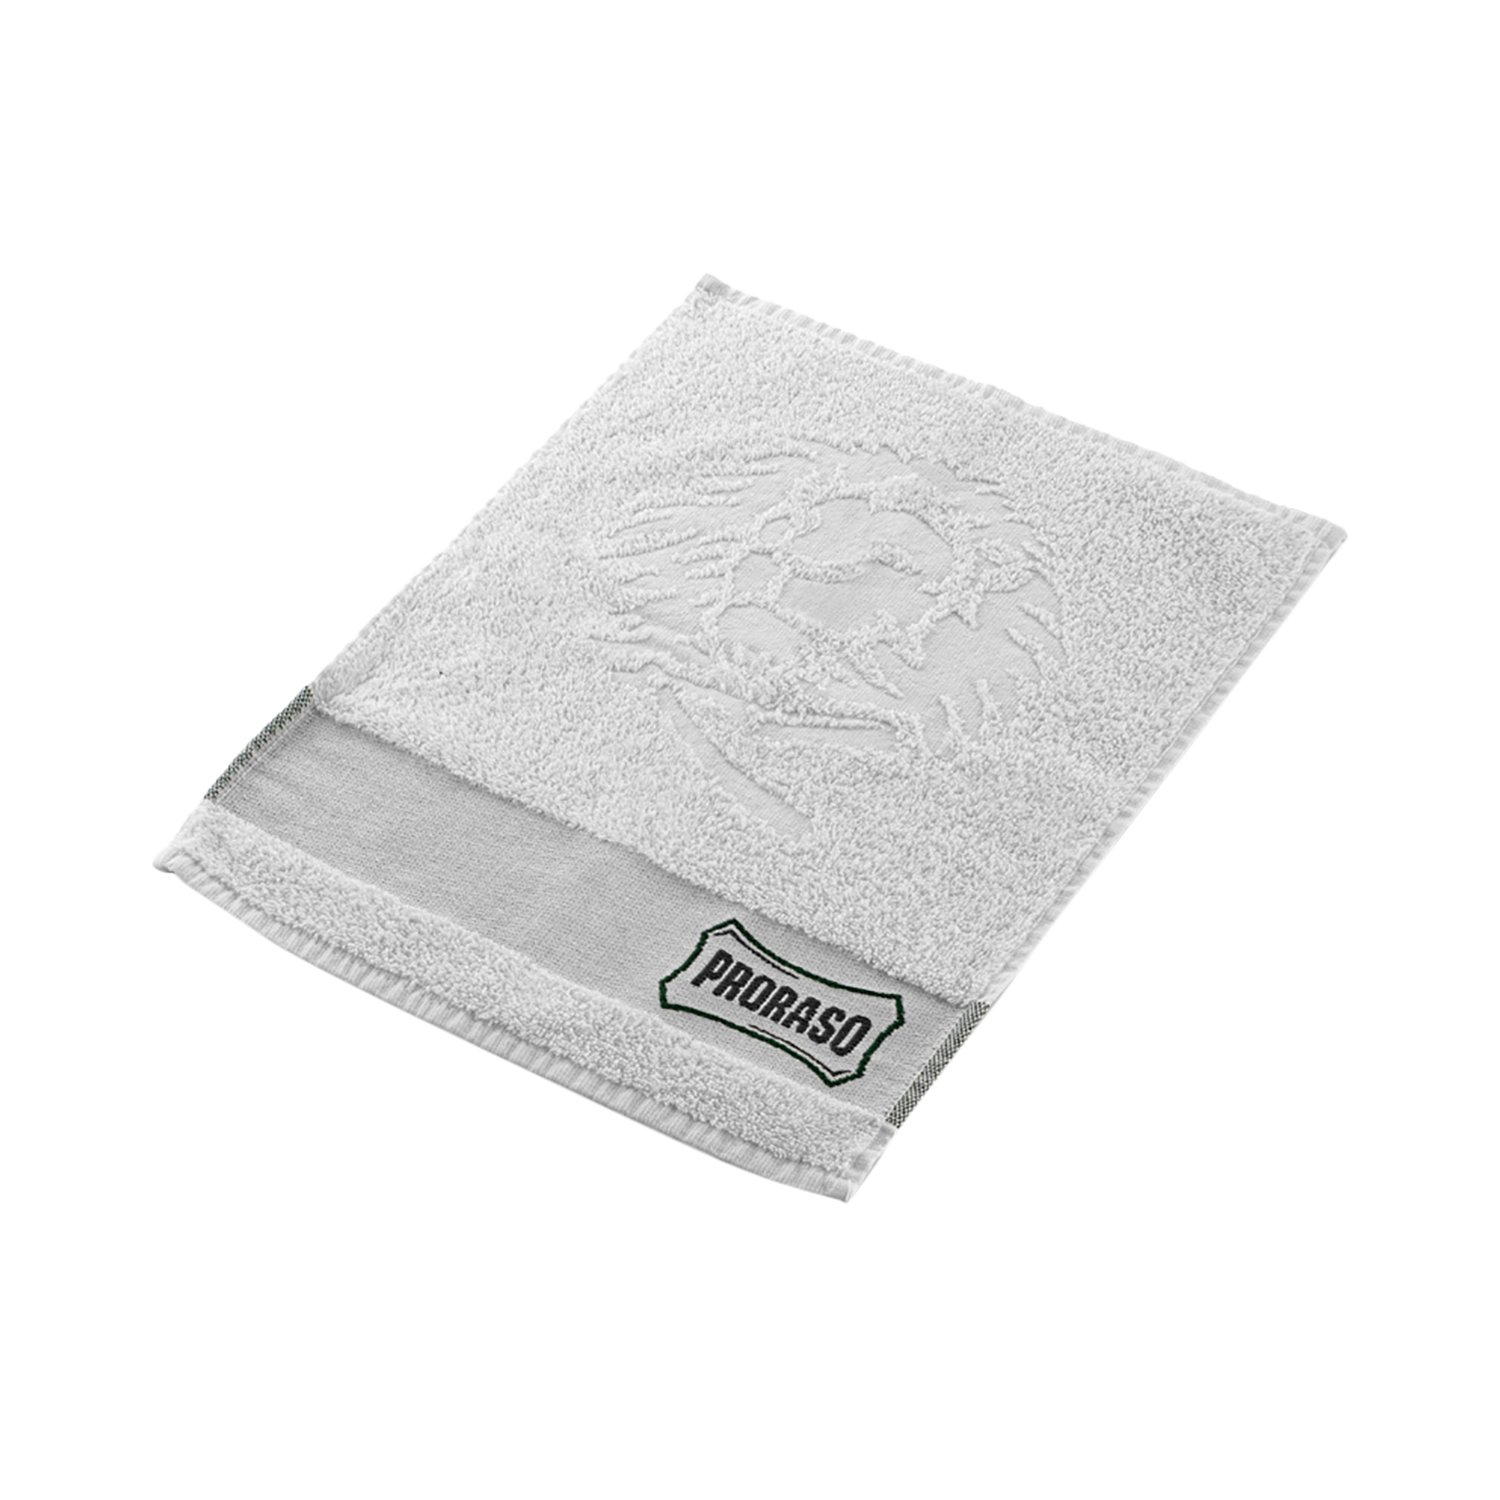 Proraso - Handtuch aus Baumwolle - 40 x 30 cm